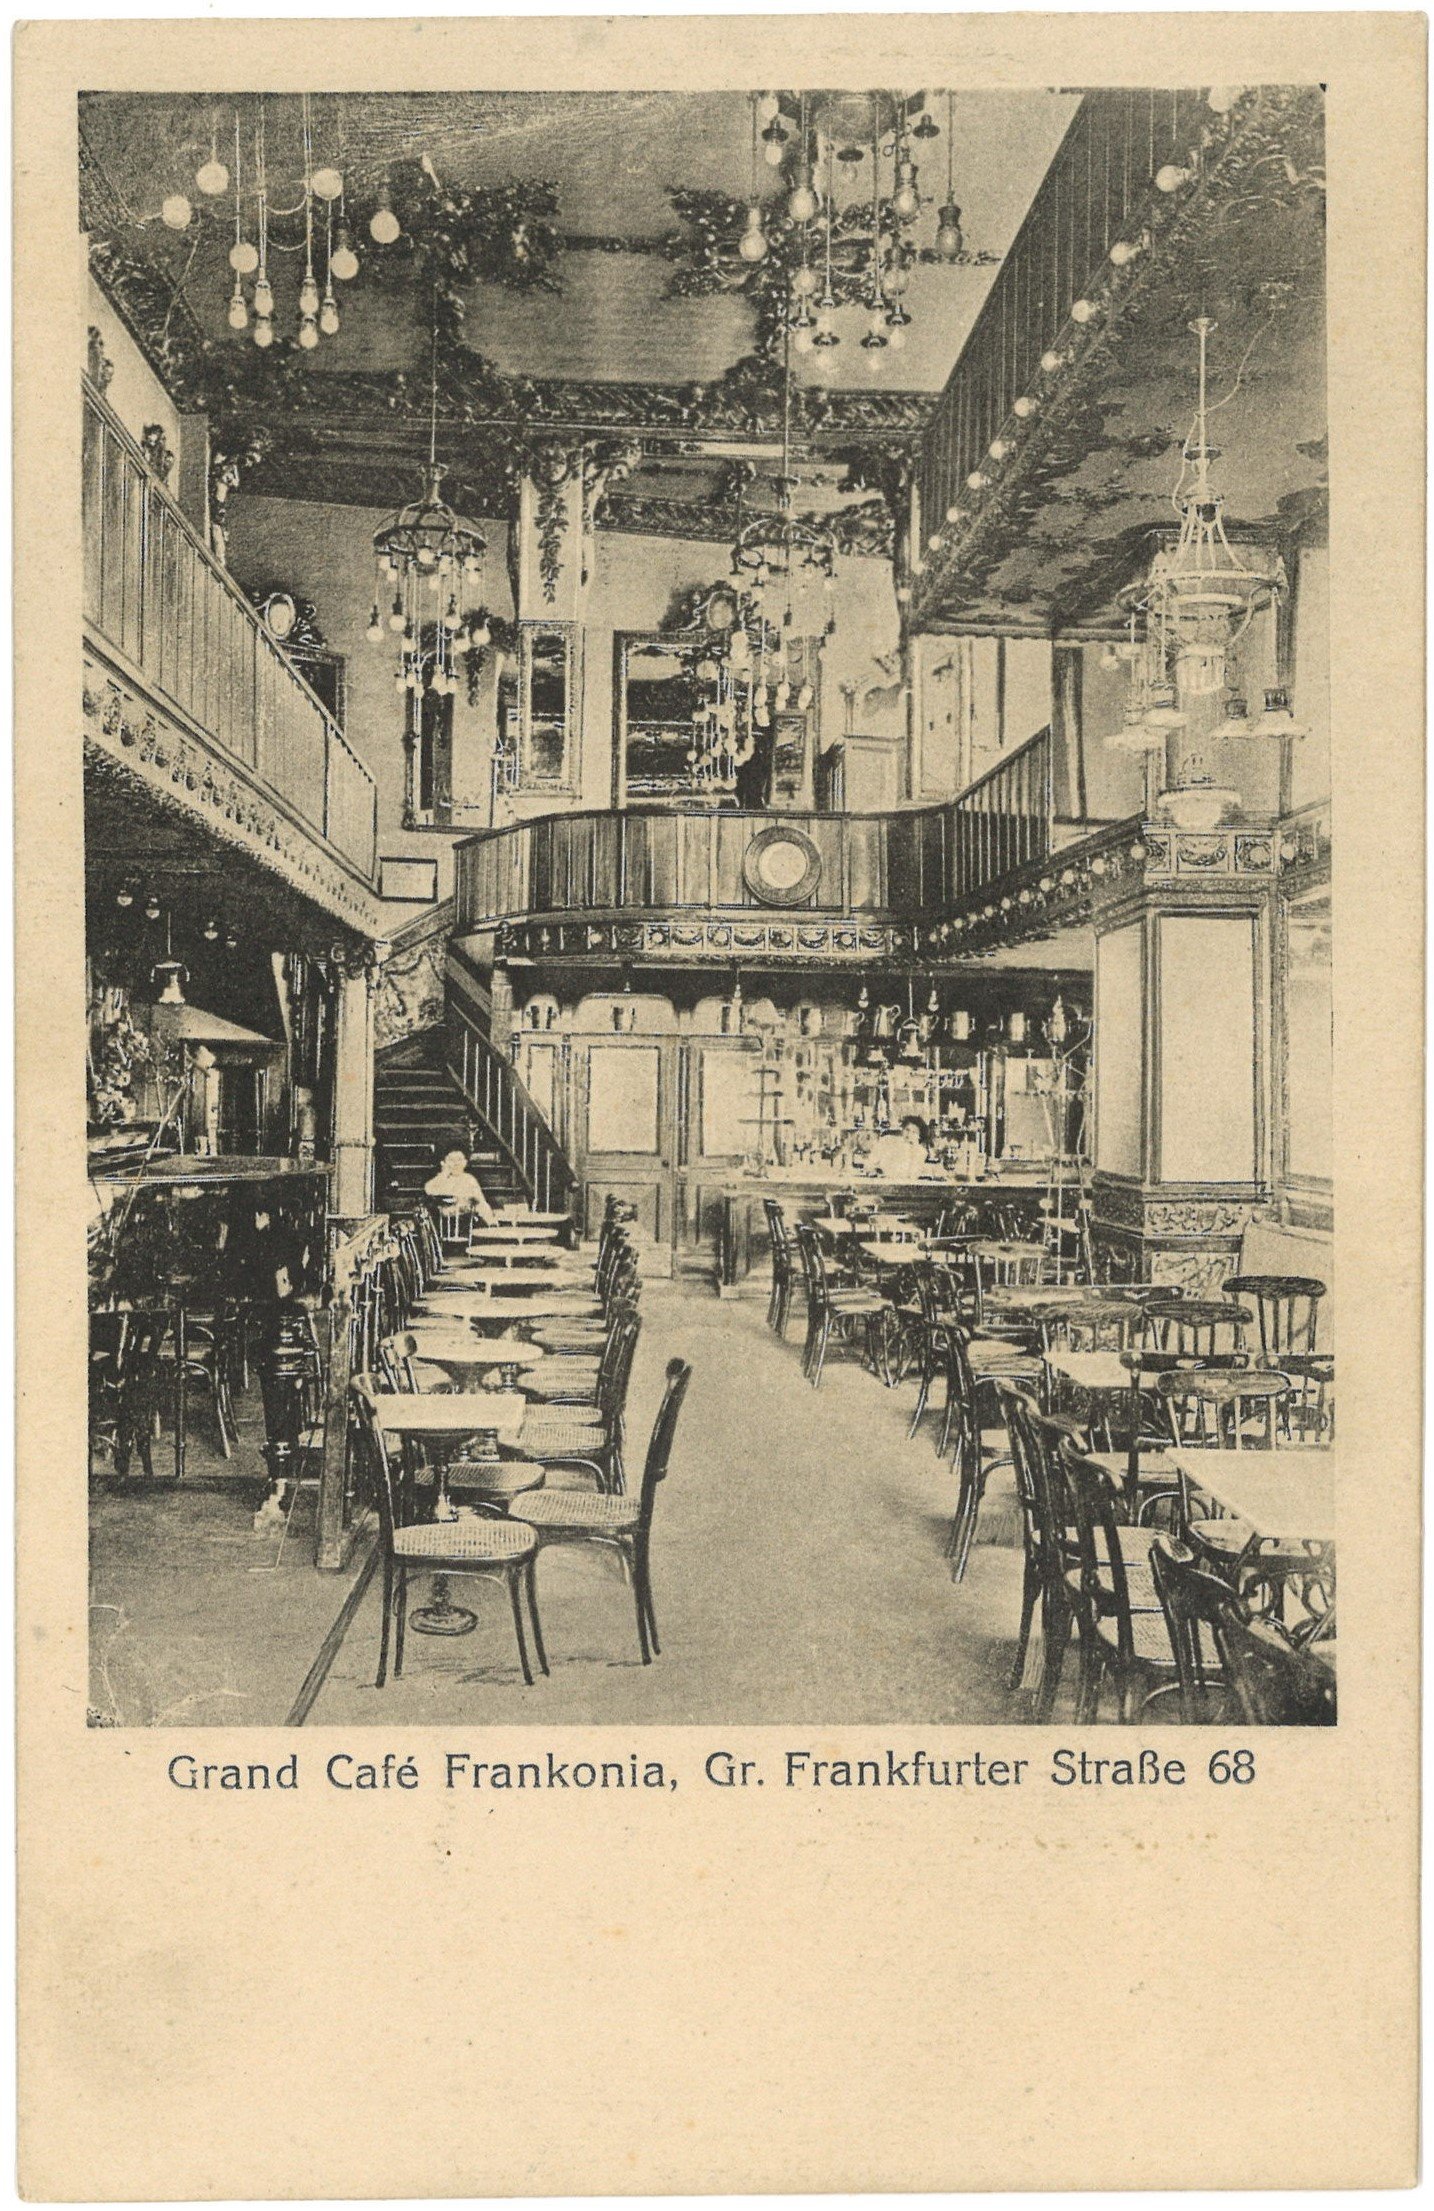 Berlin-Friedrichshain: Café "Frankonia", Große Frankfurter Straße 68 (Landesgeschichtliche Vereinigung für die Mark Brandenburg e.V. CC BY)